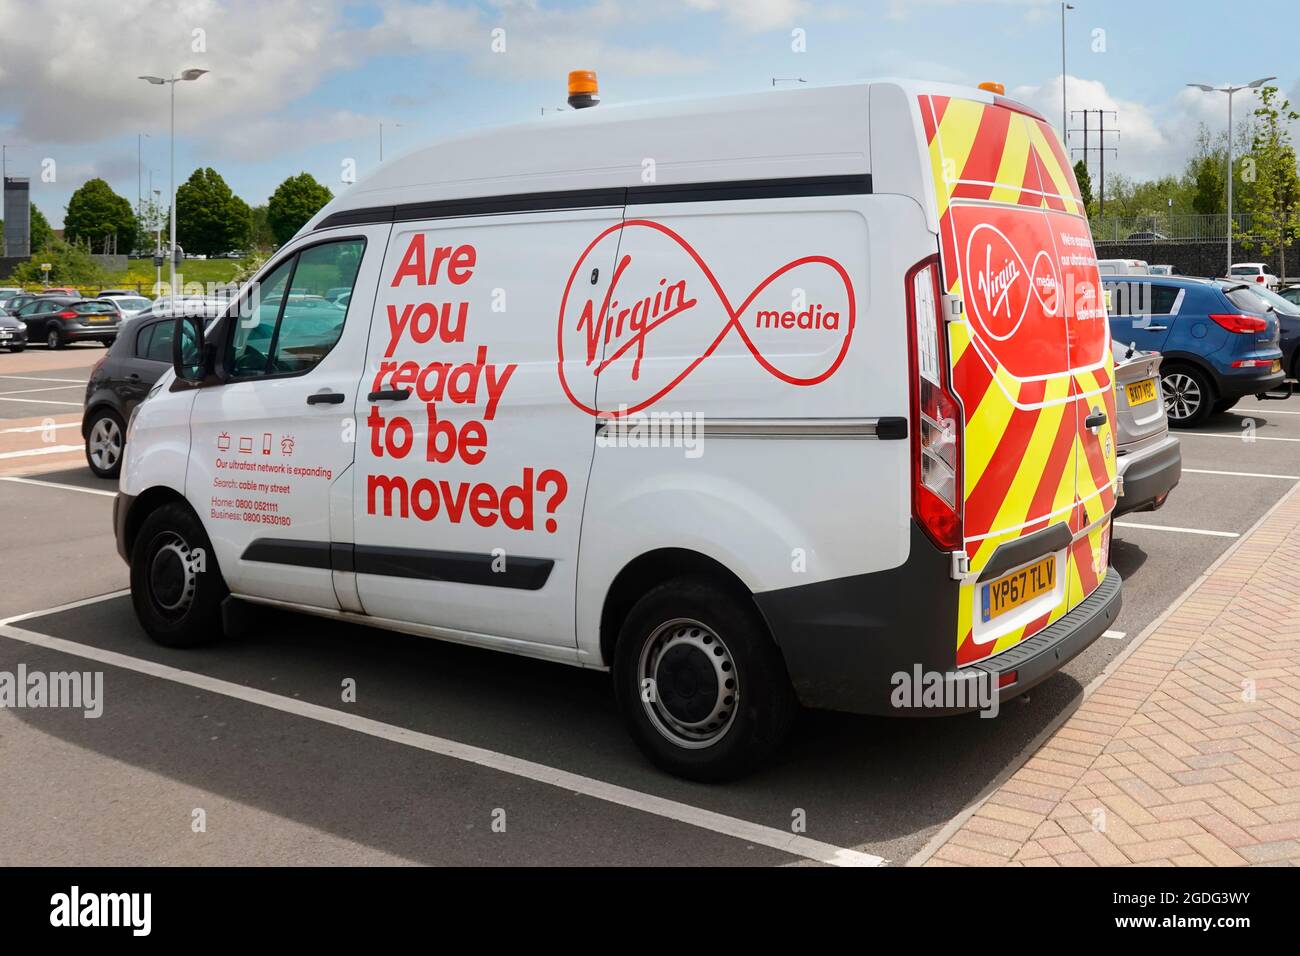 Grafica pubblicitaria sul lato di parcheggiato Virgin Media van un'azienda britannica di telecomunicazioni che fornisce servizi di telefonia via internet in televisione nel Regno Unito Foto Stock